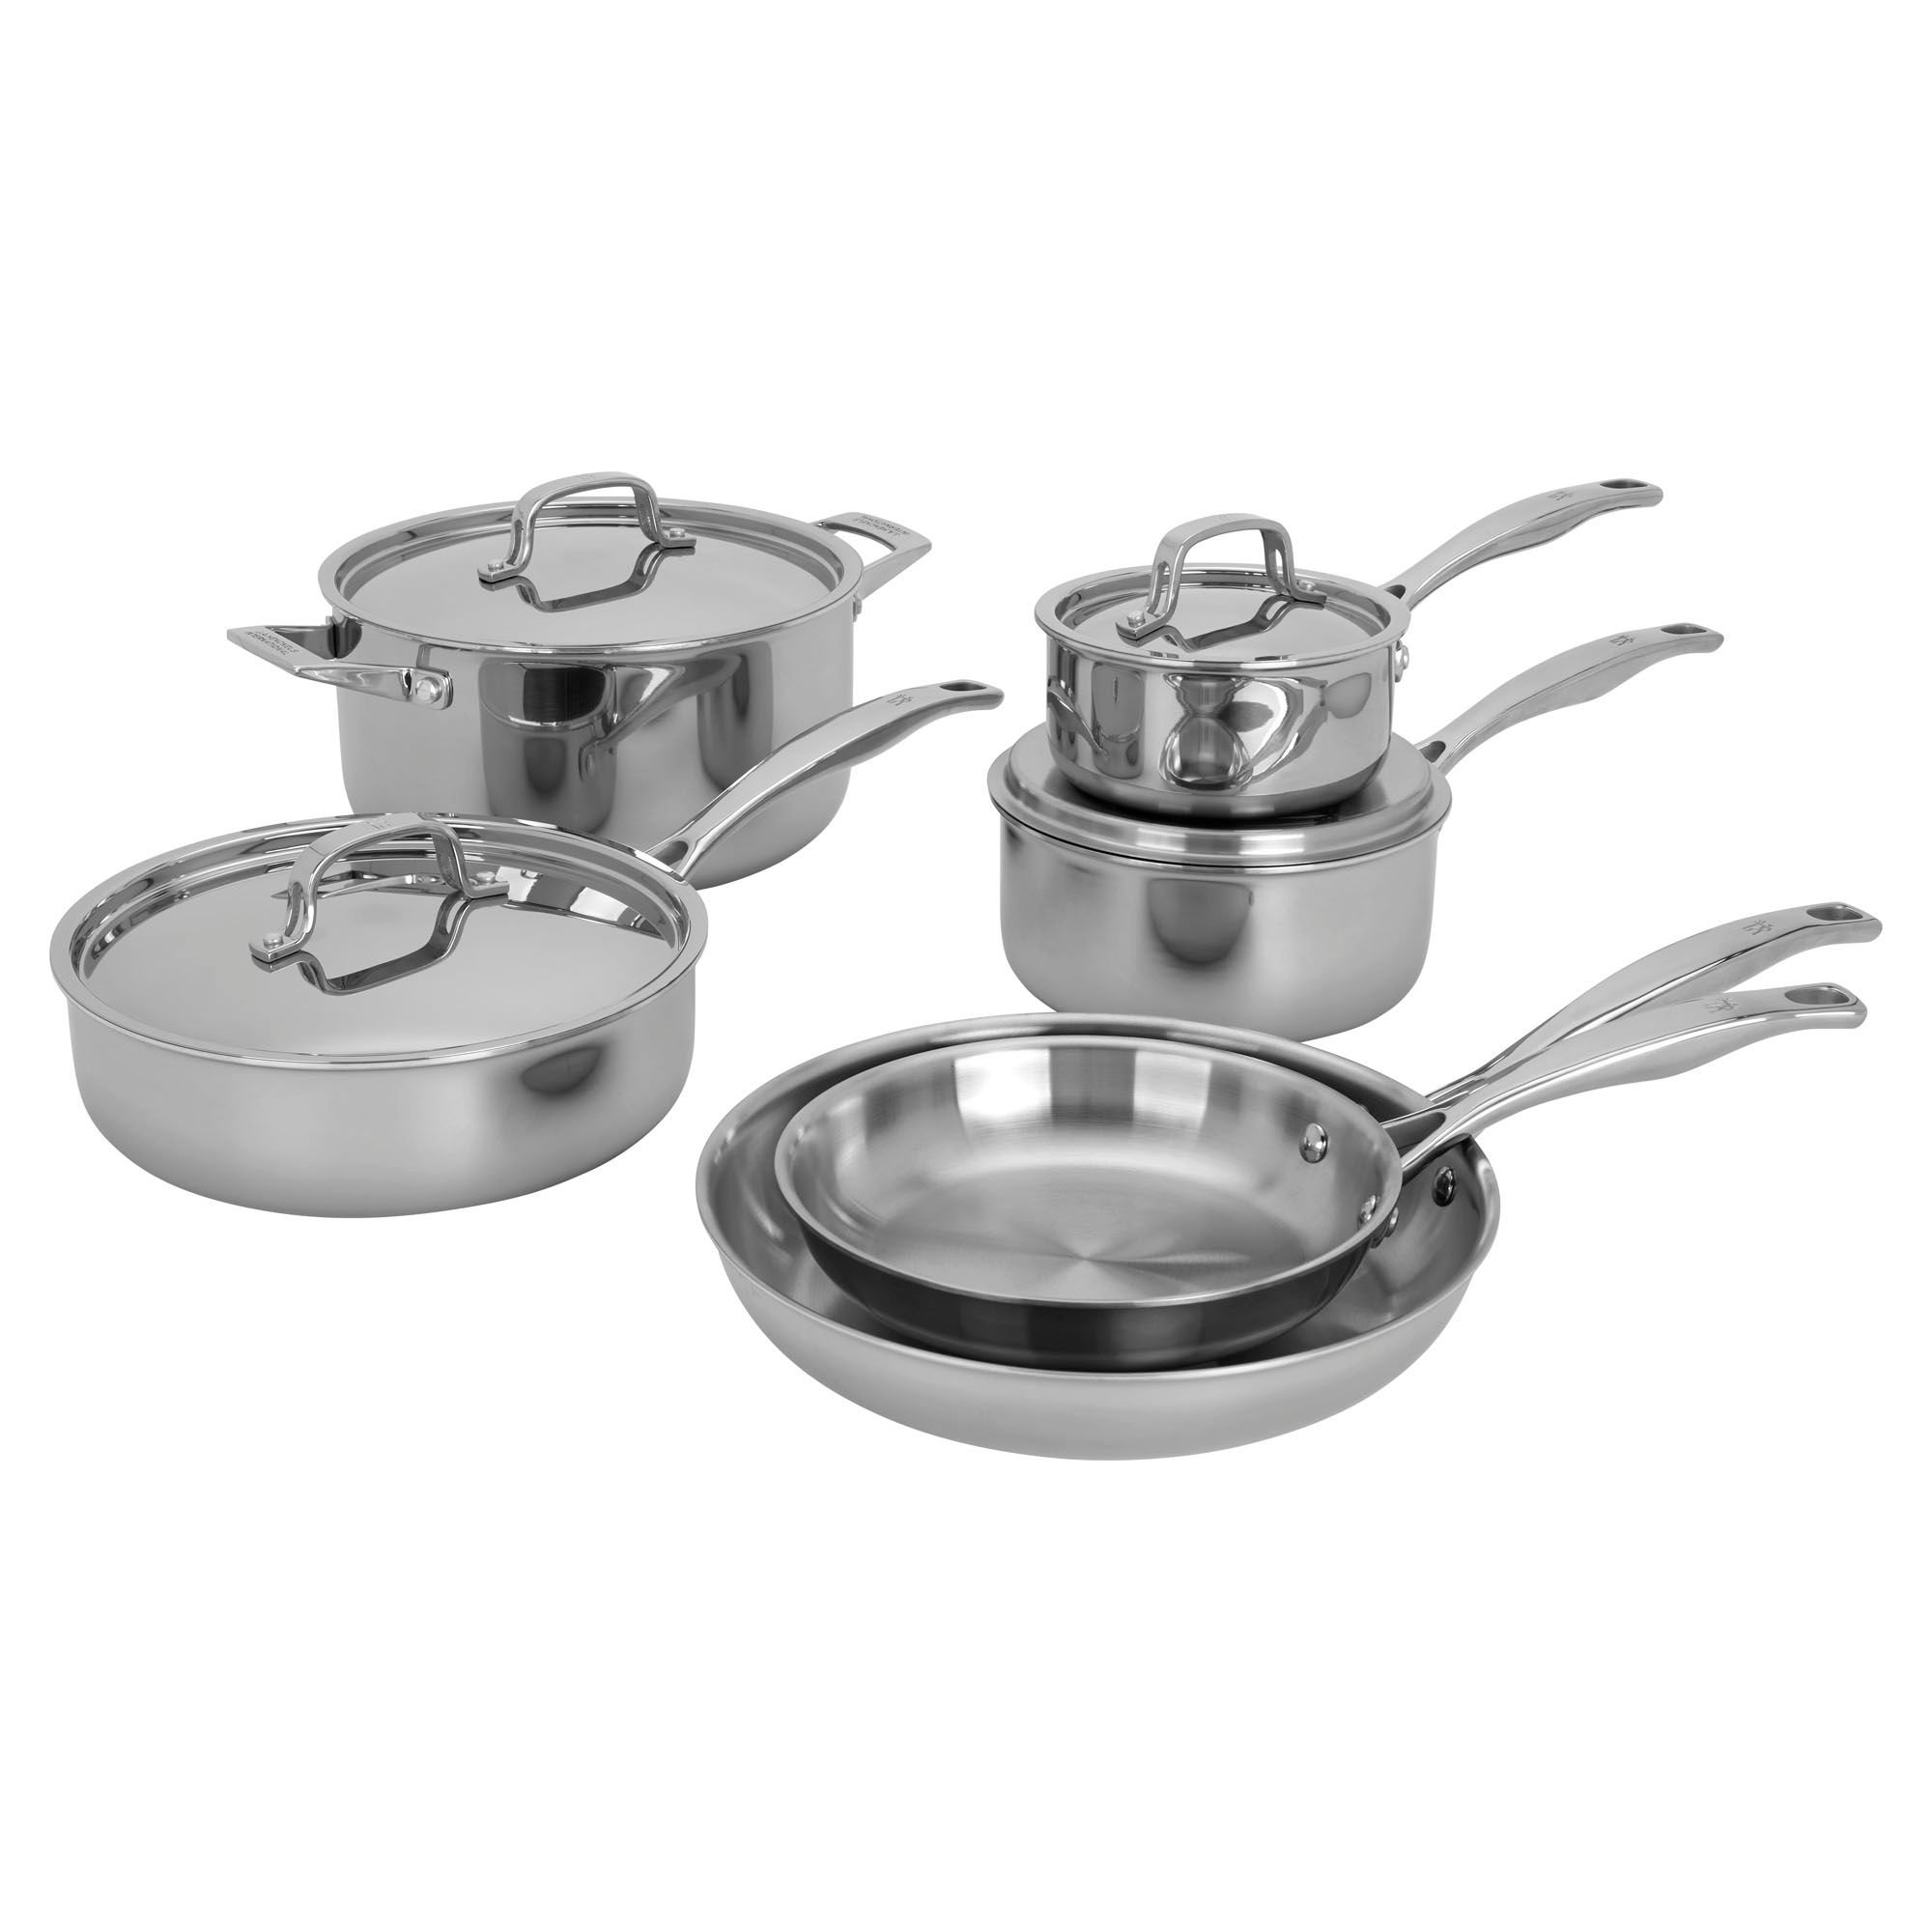 https://assets.wfcdn.com/im/03784464/compr-r85/2177/217701990/henckels-10-piece-stainless-steel-cookware-set.jpg